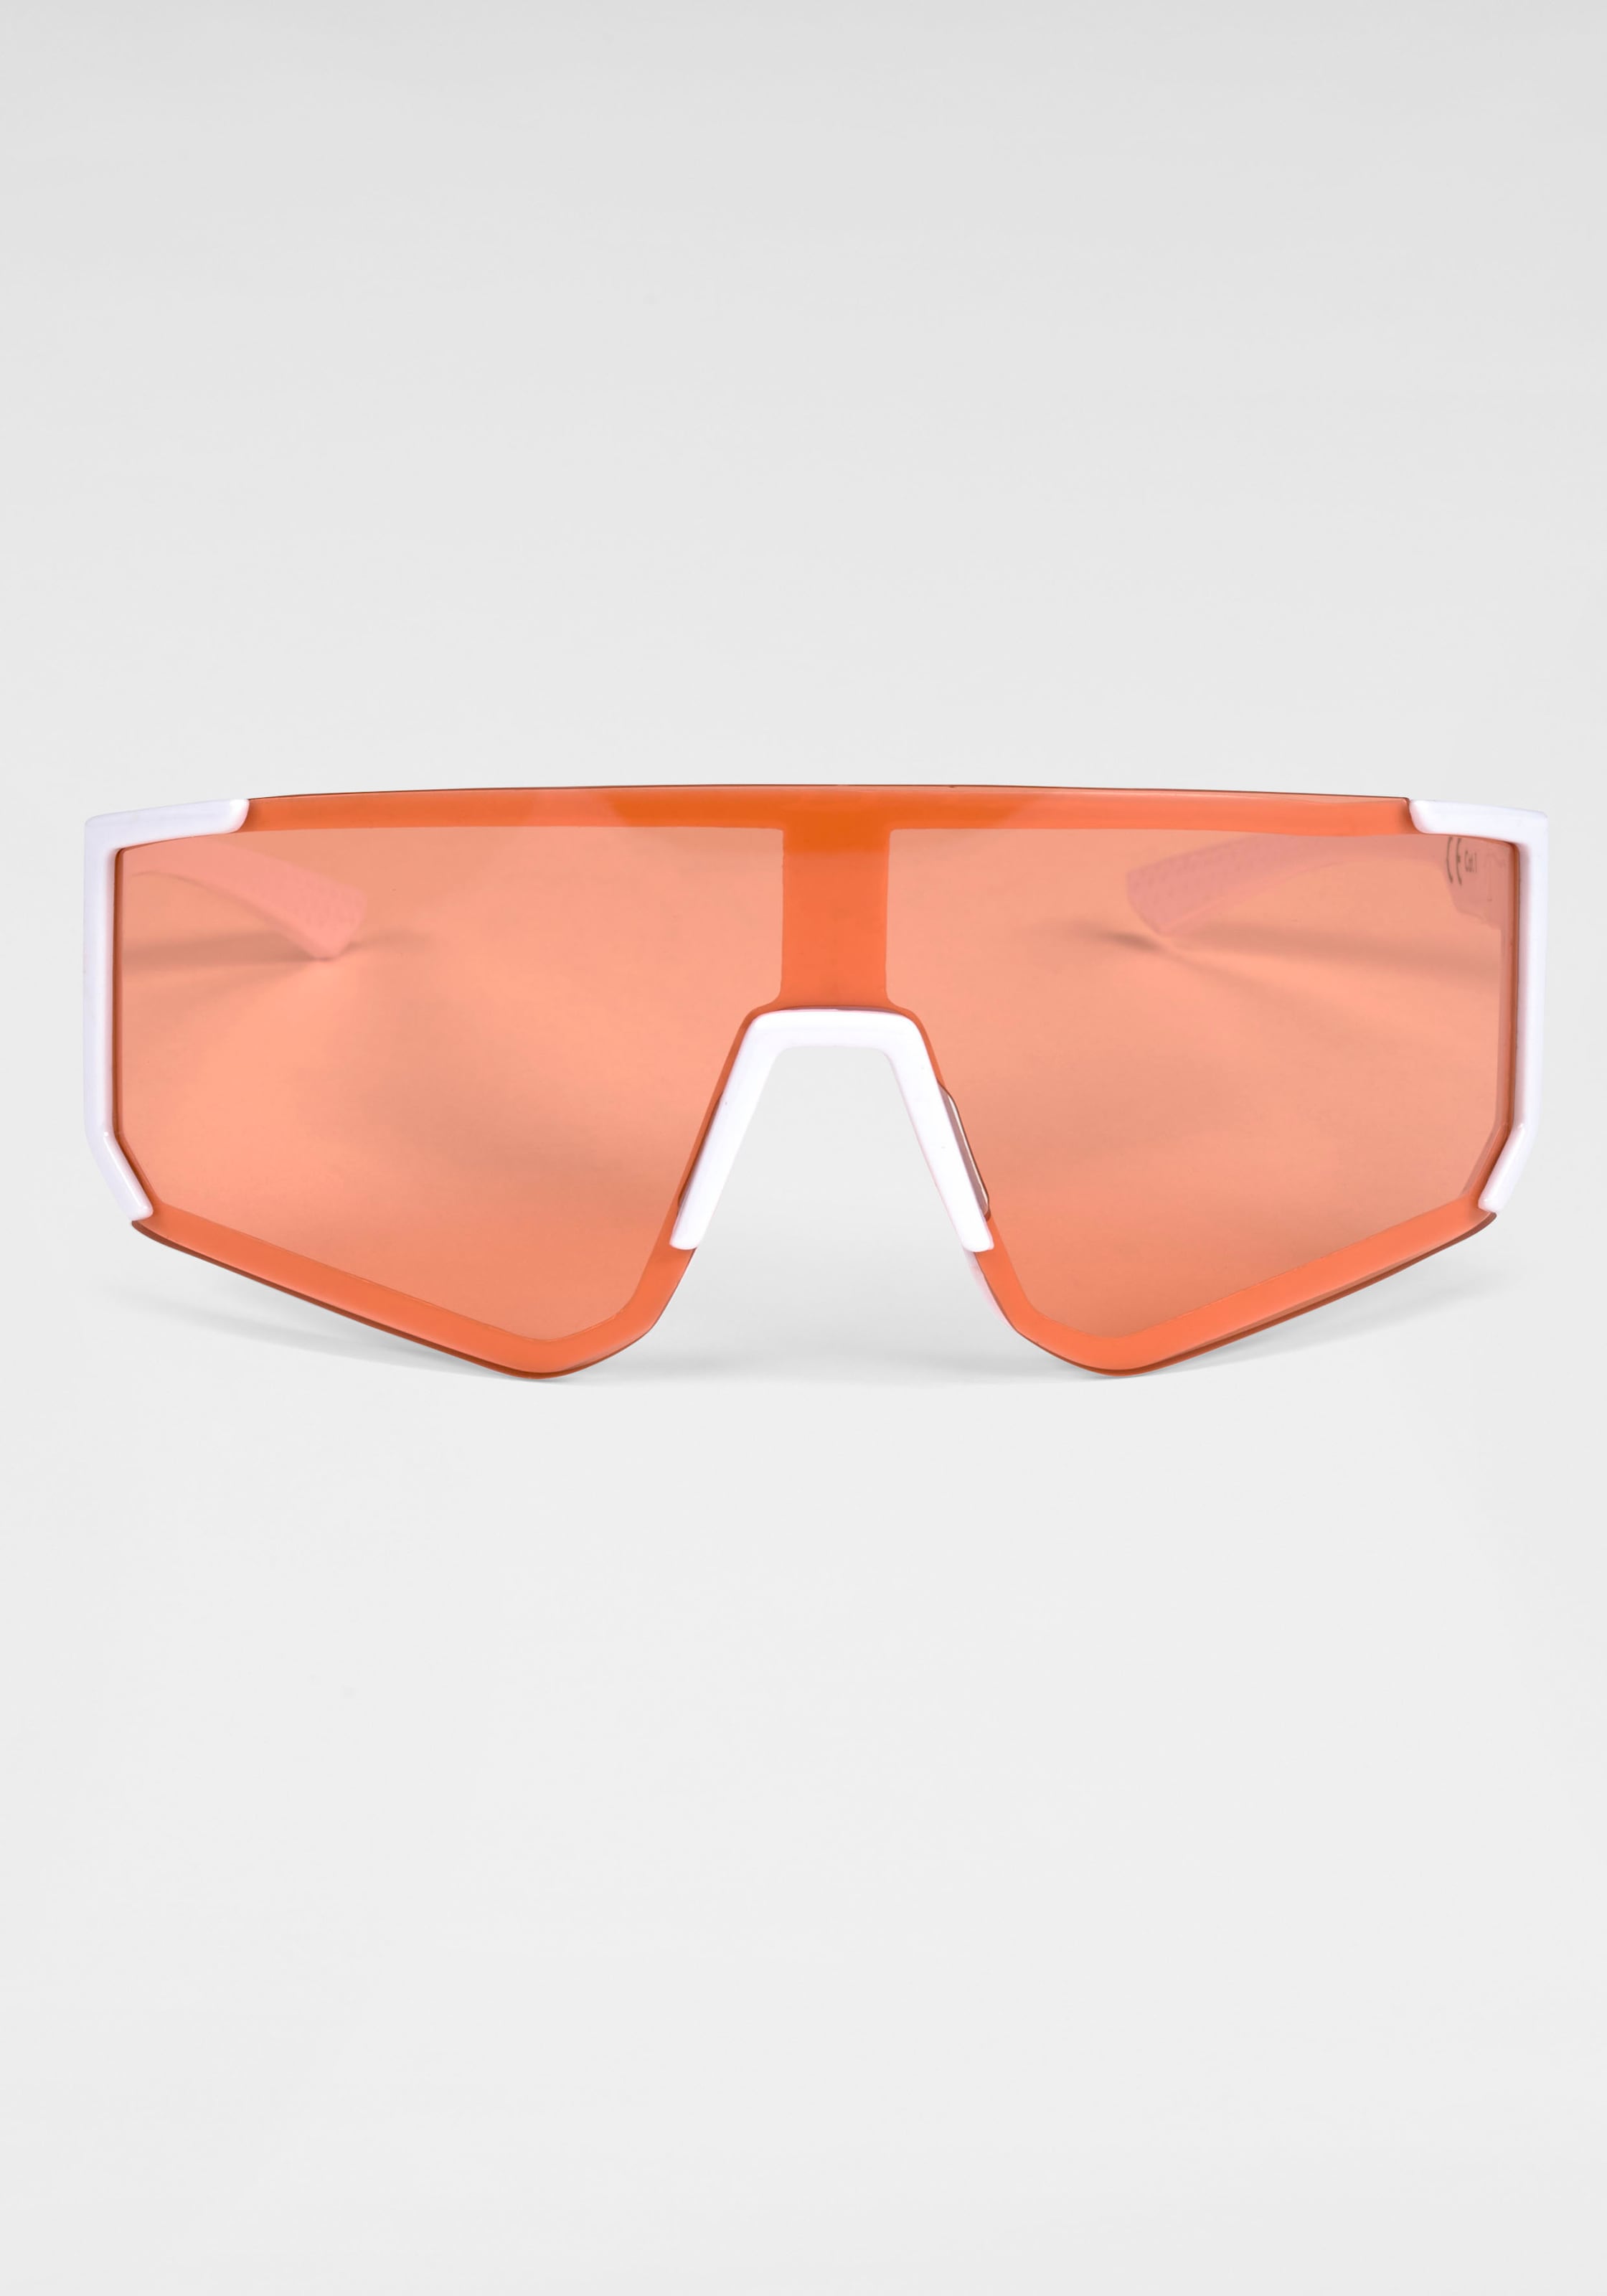 BACK IN BLACK Eyewear Sonnenbrille, Stylische Sportbrille mit weissem Rahmen und orangenen Gläsern